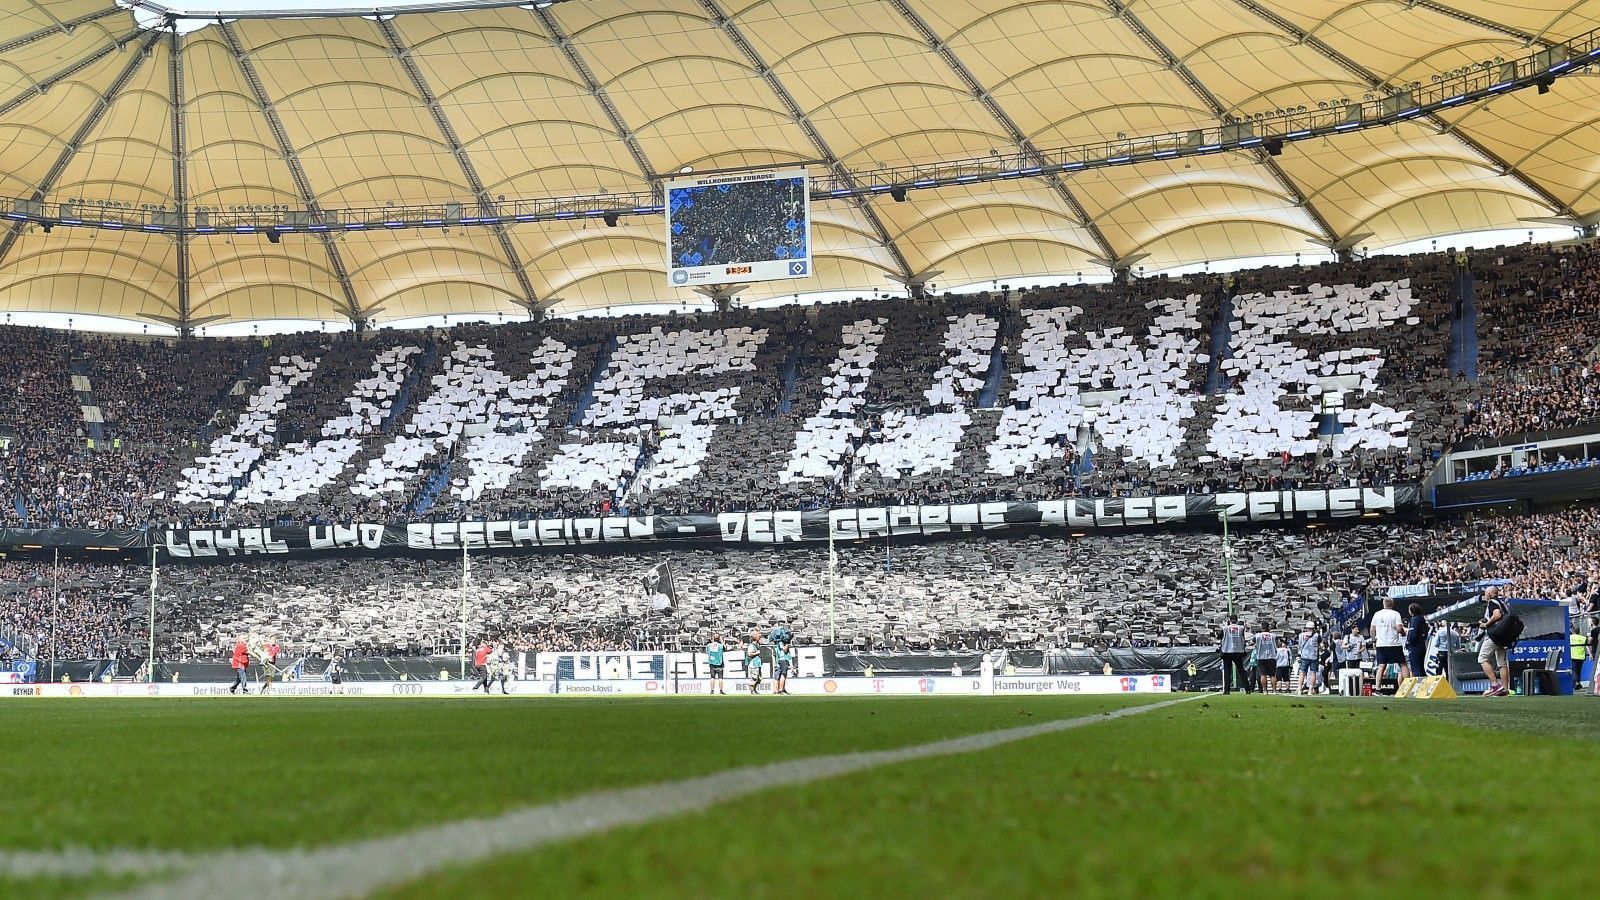 
                <strong>Emotionale Bilder: HSV verabschiedet sich von Seeler</strong><br>
                Vor dem Zweitligaspiel gegen Hansa Rostock verabschieden sich der Hamburger SV und seine Fans vom verstorbenen Uwe Seeler. Im Volksparkstadion kommt es zu rührenden Szenen. ran zeigt die Bilder.
              